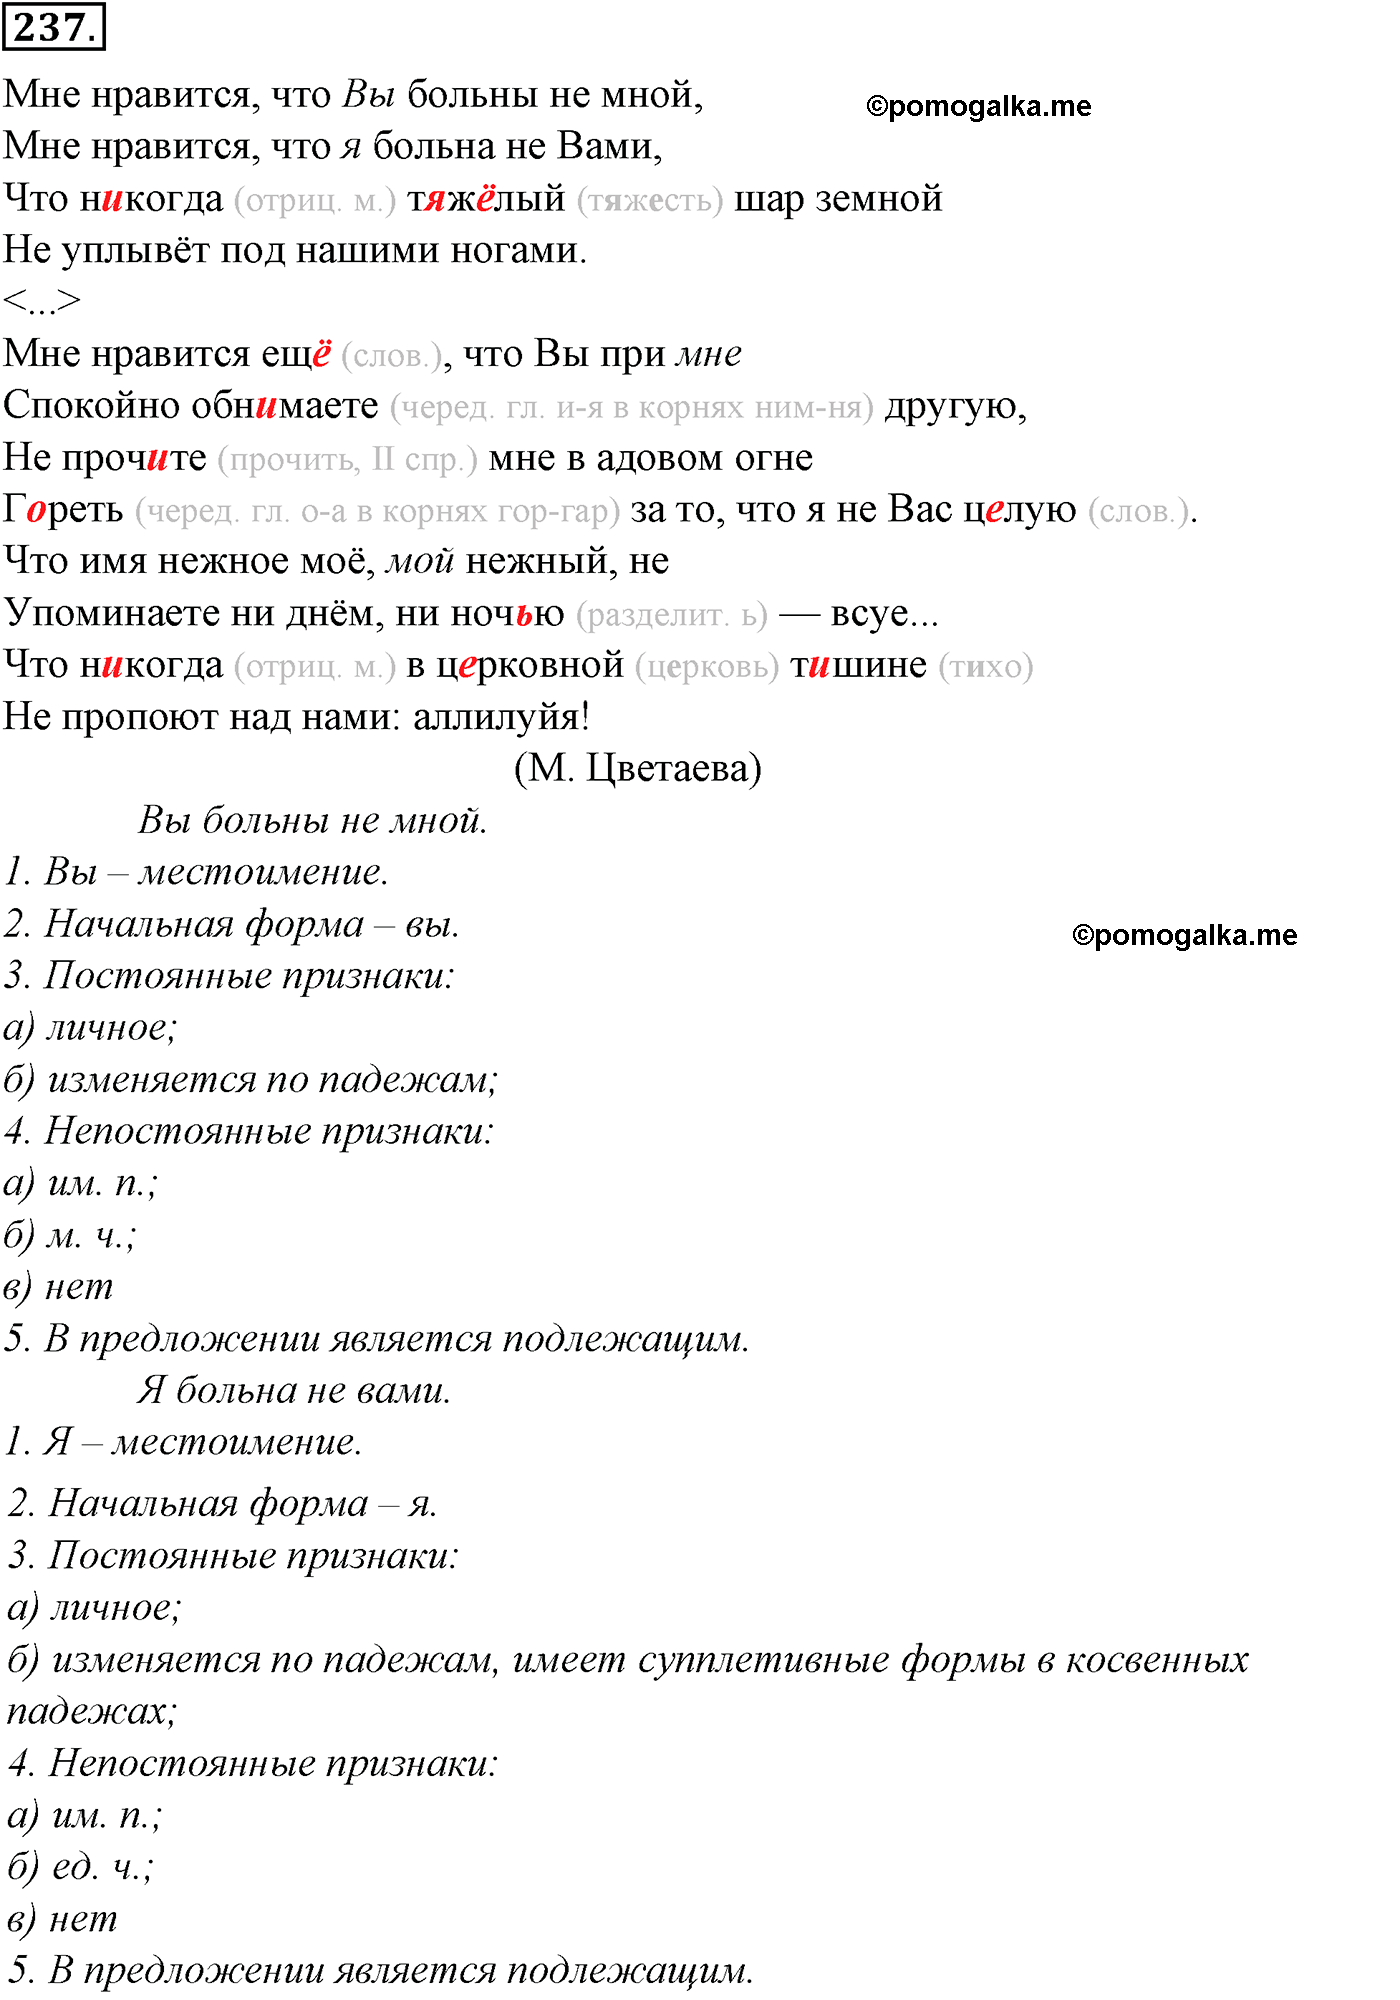 упражнение №237 русский язык 10-11 класс Гольцова